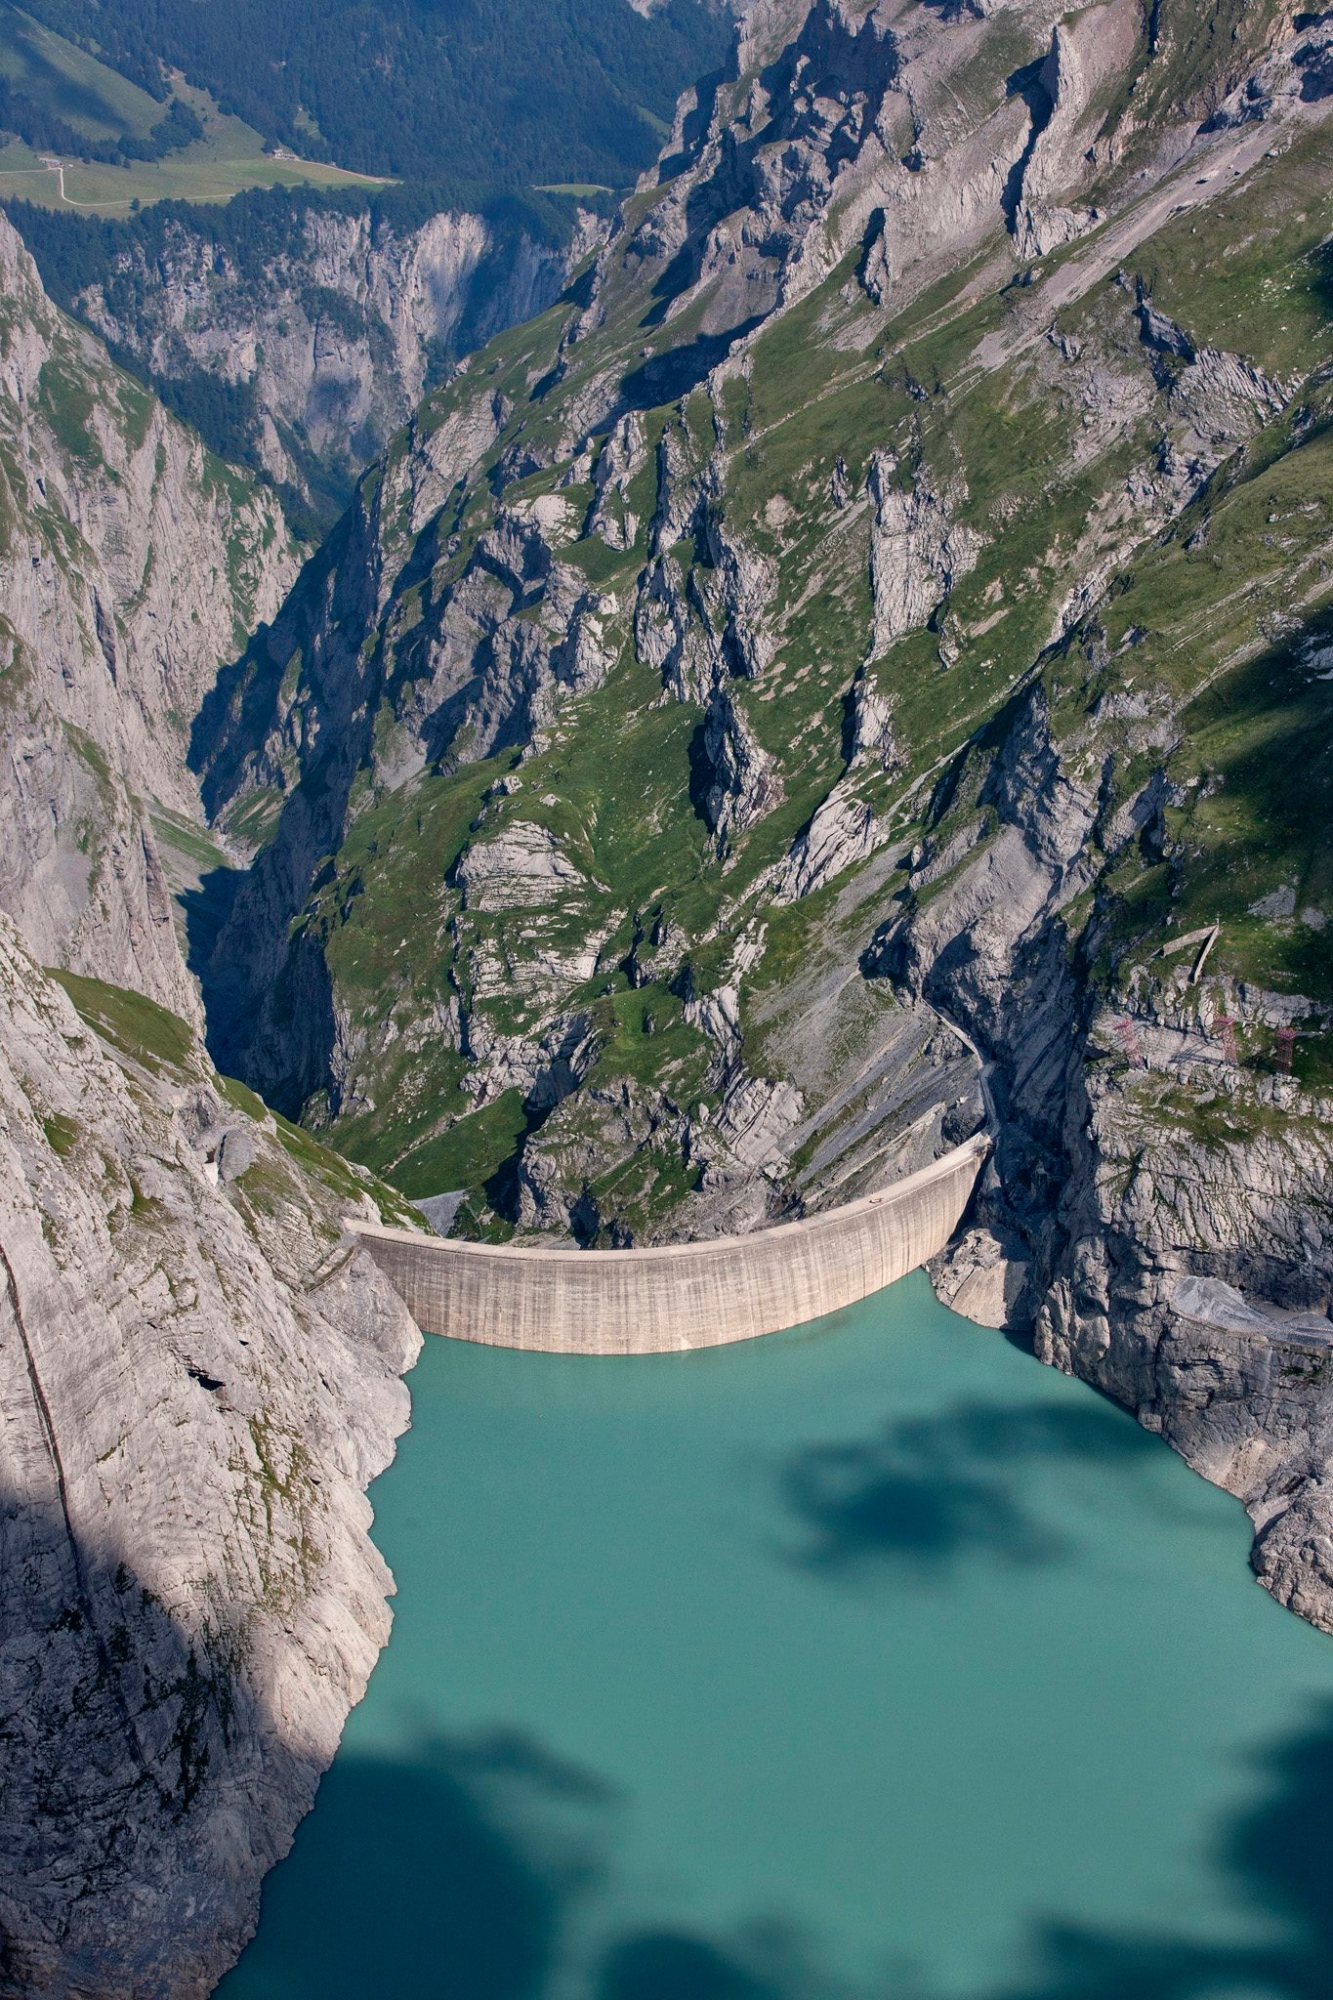 ARCHIVE: BILDPAKET STAUMAUER LIMMERN ***Luftaufnahme der Staumauer des Limmernstausees, aufgenommen am 5. Juli 2011. - Zuhinterst im Glarnerland, zwischen Tierfehd am Fuss des Toedi, dem Limmern- und dem Muttsee, wird zurzeit das Pumpspeicherkraftwerk "Linthal 2015" gebaut. Es ist die groesste Kraftwerkbaustelle der Schweiz. Das Projekt "Linthal 2015" besteht im Wesentlichen in der mehrfachen Nutzung des Wassers, das vom Mutt- in den Limmernsee fliesst. Der Muttsee erhaelt eine Staumauer, die eine Anhebung des Wasserspiegels um bis zu 35 Meter und eine Vergroesserung des Fassungsvermoegens von 9 auf 25 Millionen Kubikmeter Wasser erlaubt. Der Muttsee wird damit zum hoechstgelegenen Speicherbecken Europas. Die Gesamtleistung der von der Axpo betriebenen Kraftwerksanlagen, die heute im Vollbetrieb bei 460 Megawatt liegt, soll mehr als verdreifacht werden. (KEYSTONE/ Alessandro Della Bella) SCHWEIZ PUMPSPEICHERKRAFTWERK "LINTHAL 2015"